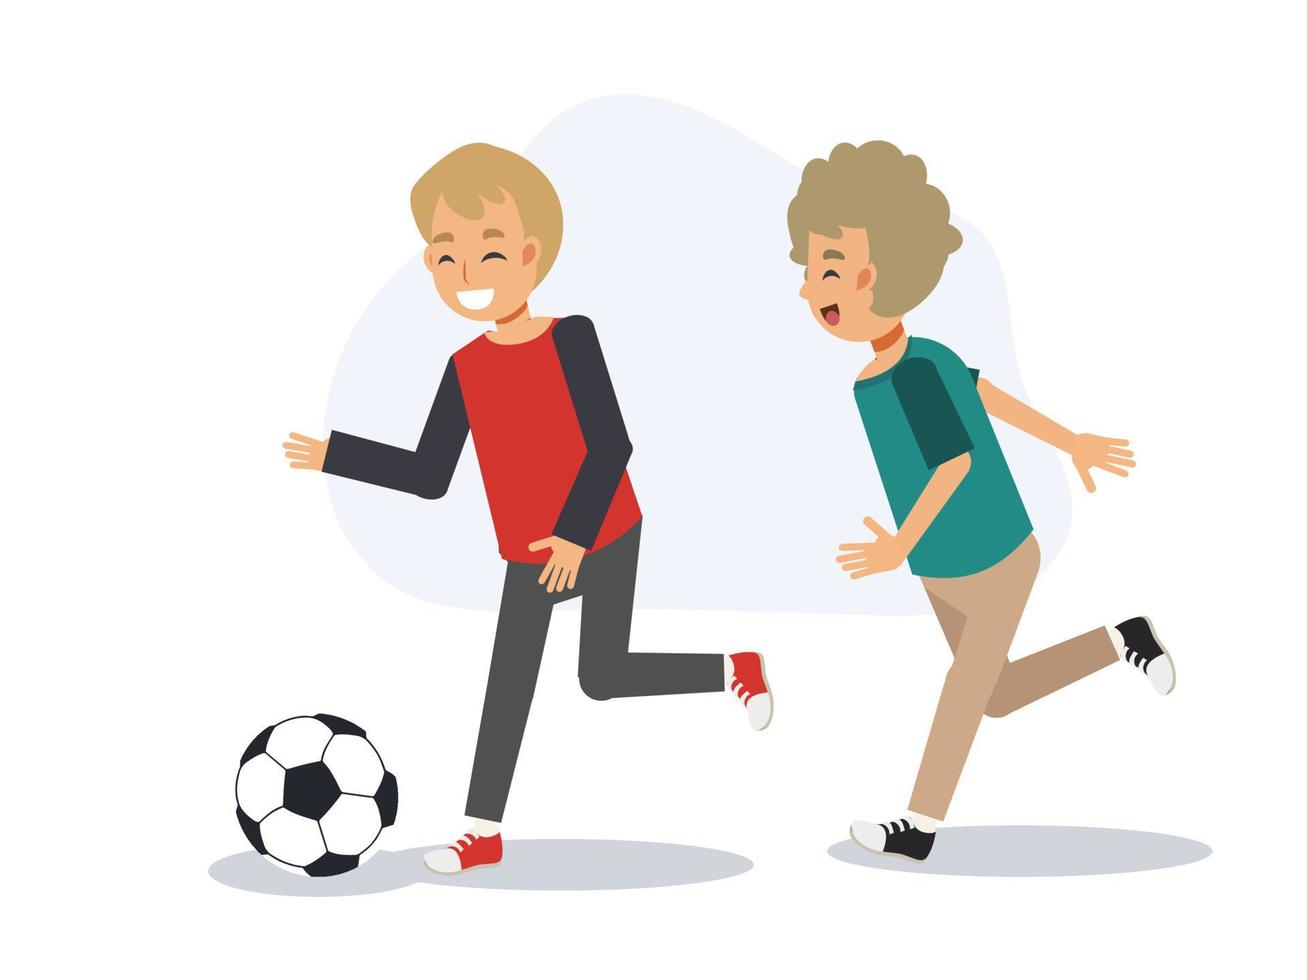 Bildungssportkonzept, junges Kind spielt Fußball, Fußball zusammen. flache Vektorgrafik 2D-Cartoon-Figur. vektor